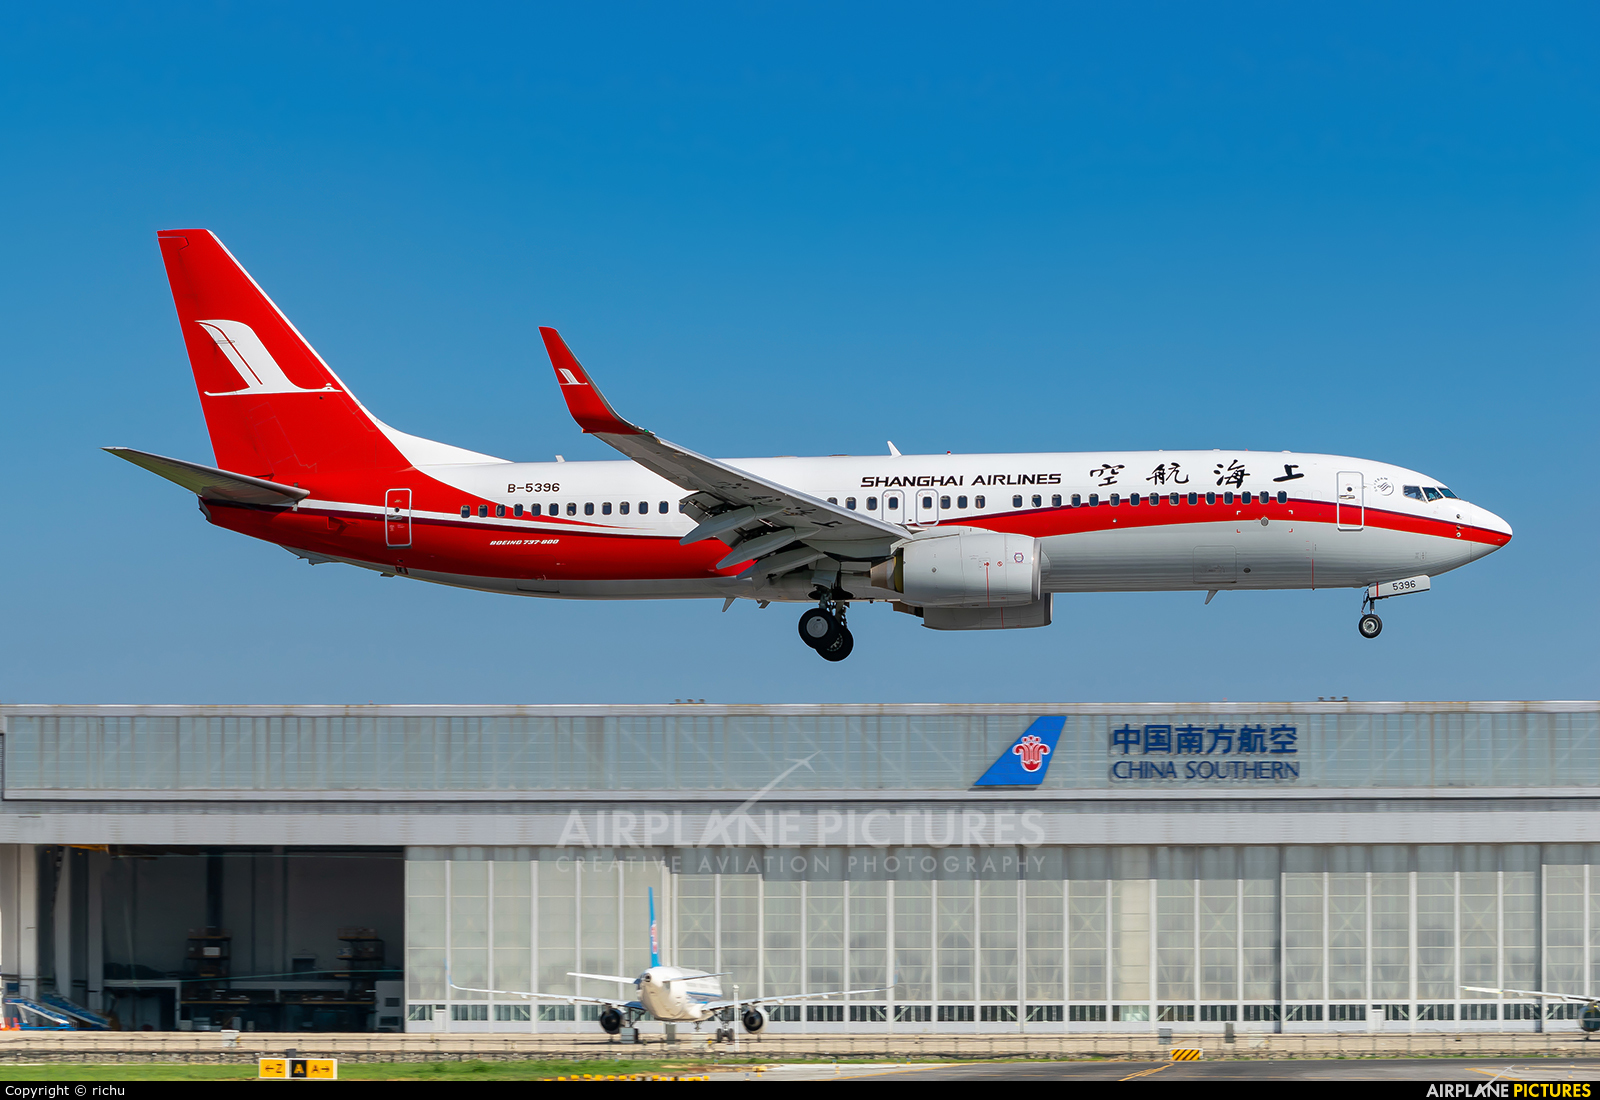 Shanghai Airlines B-5396 aircraft at Shenyang-Taoxian